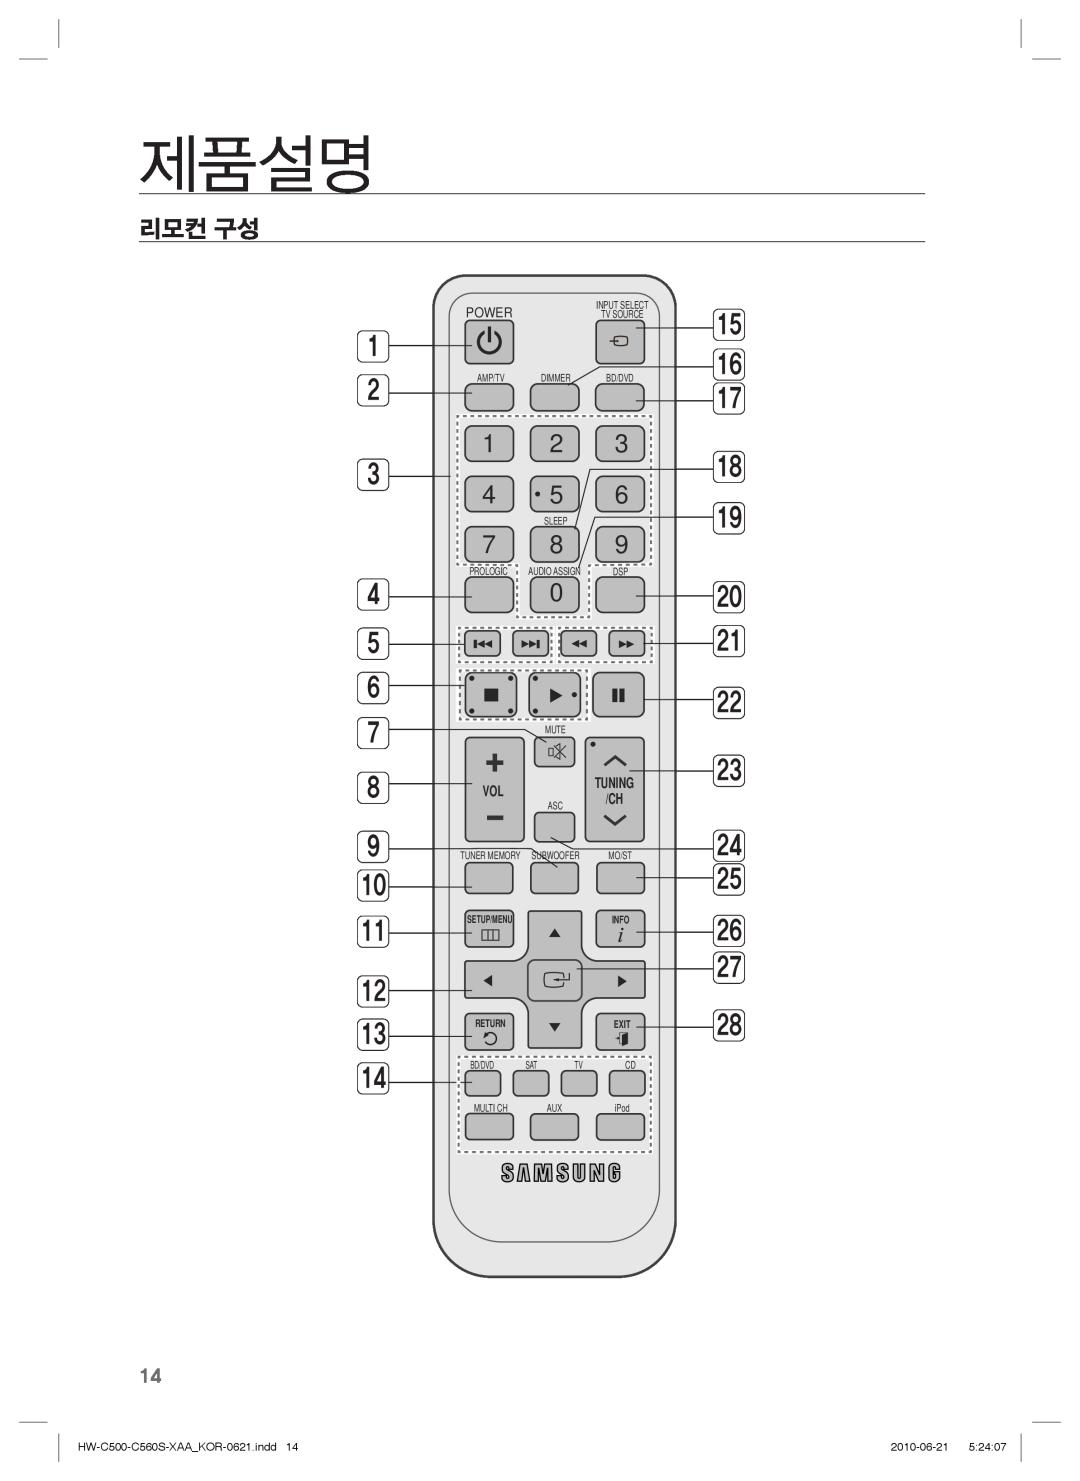 Samsung manual 리모컨 구성, 제품설명, 1 2 3 4 5, HW-C500-C560S-XAA KOR-0621.indd14, 2010-06-21 